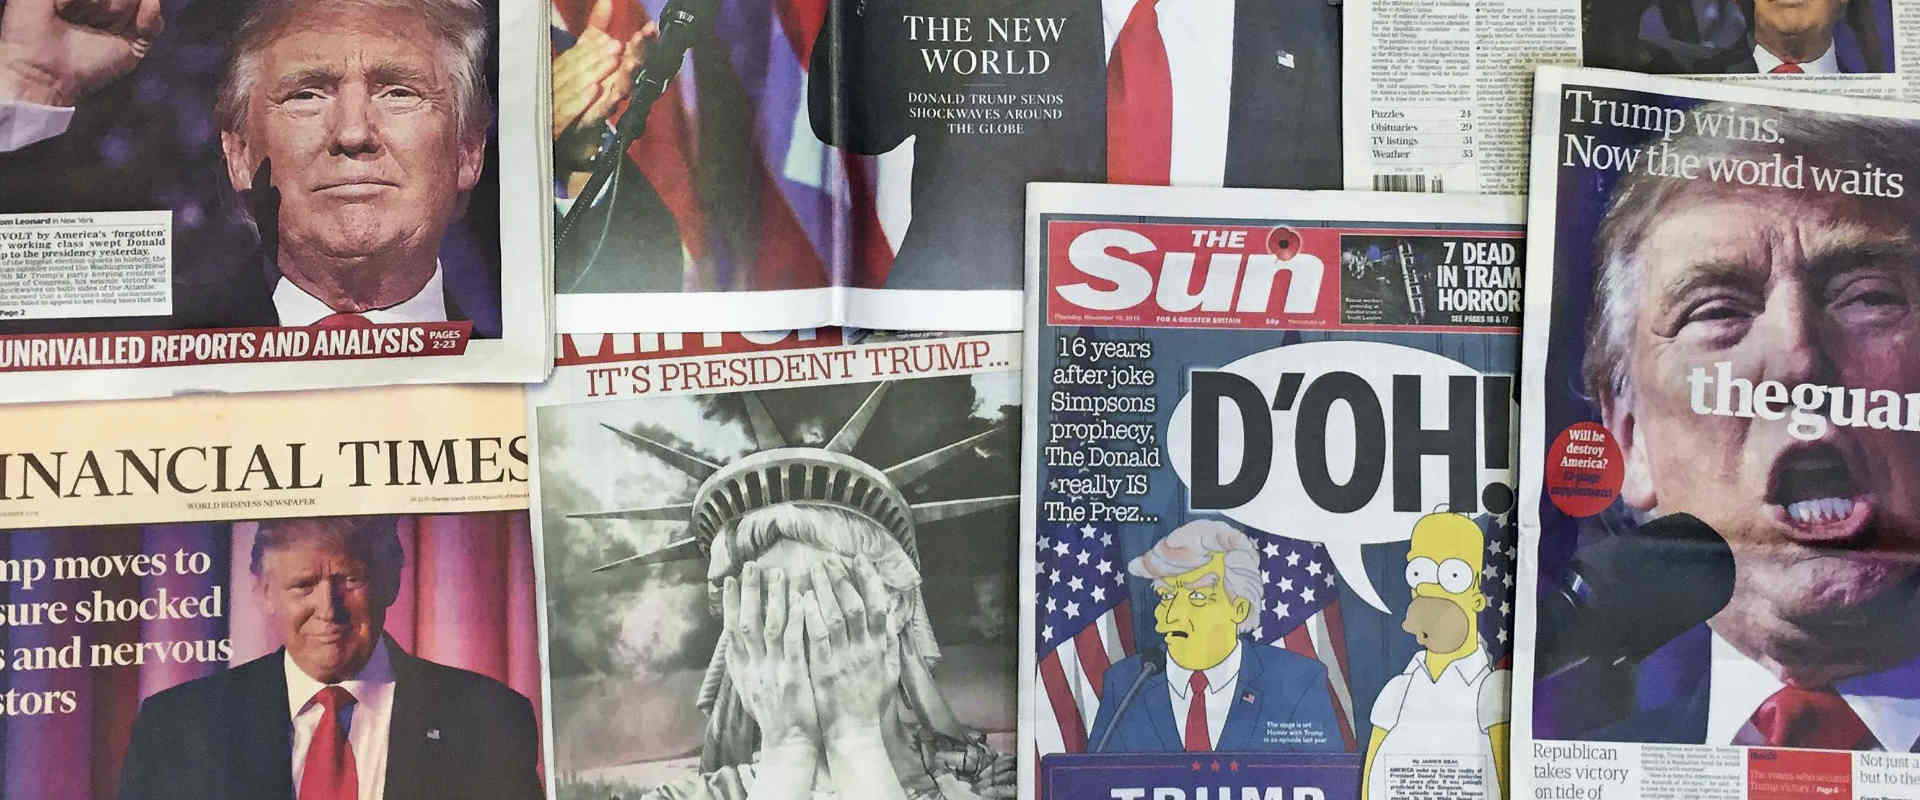 כותרות עיתוני בריטניה לאחר בחירתו של דונלד טראמפ ל